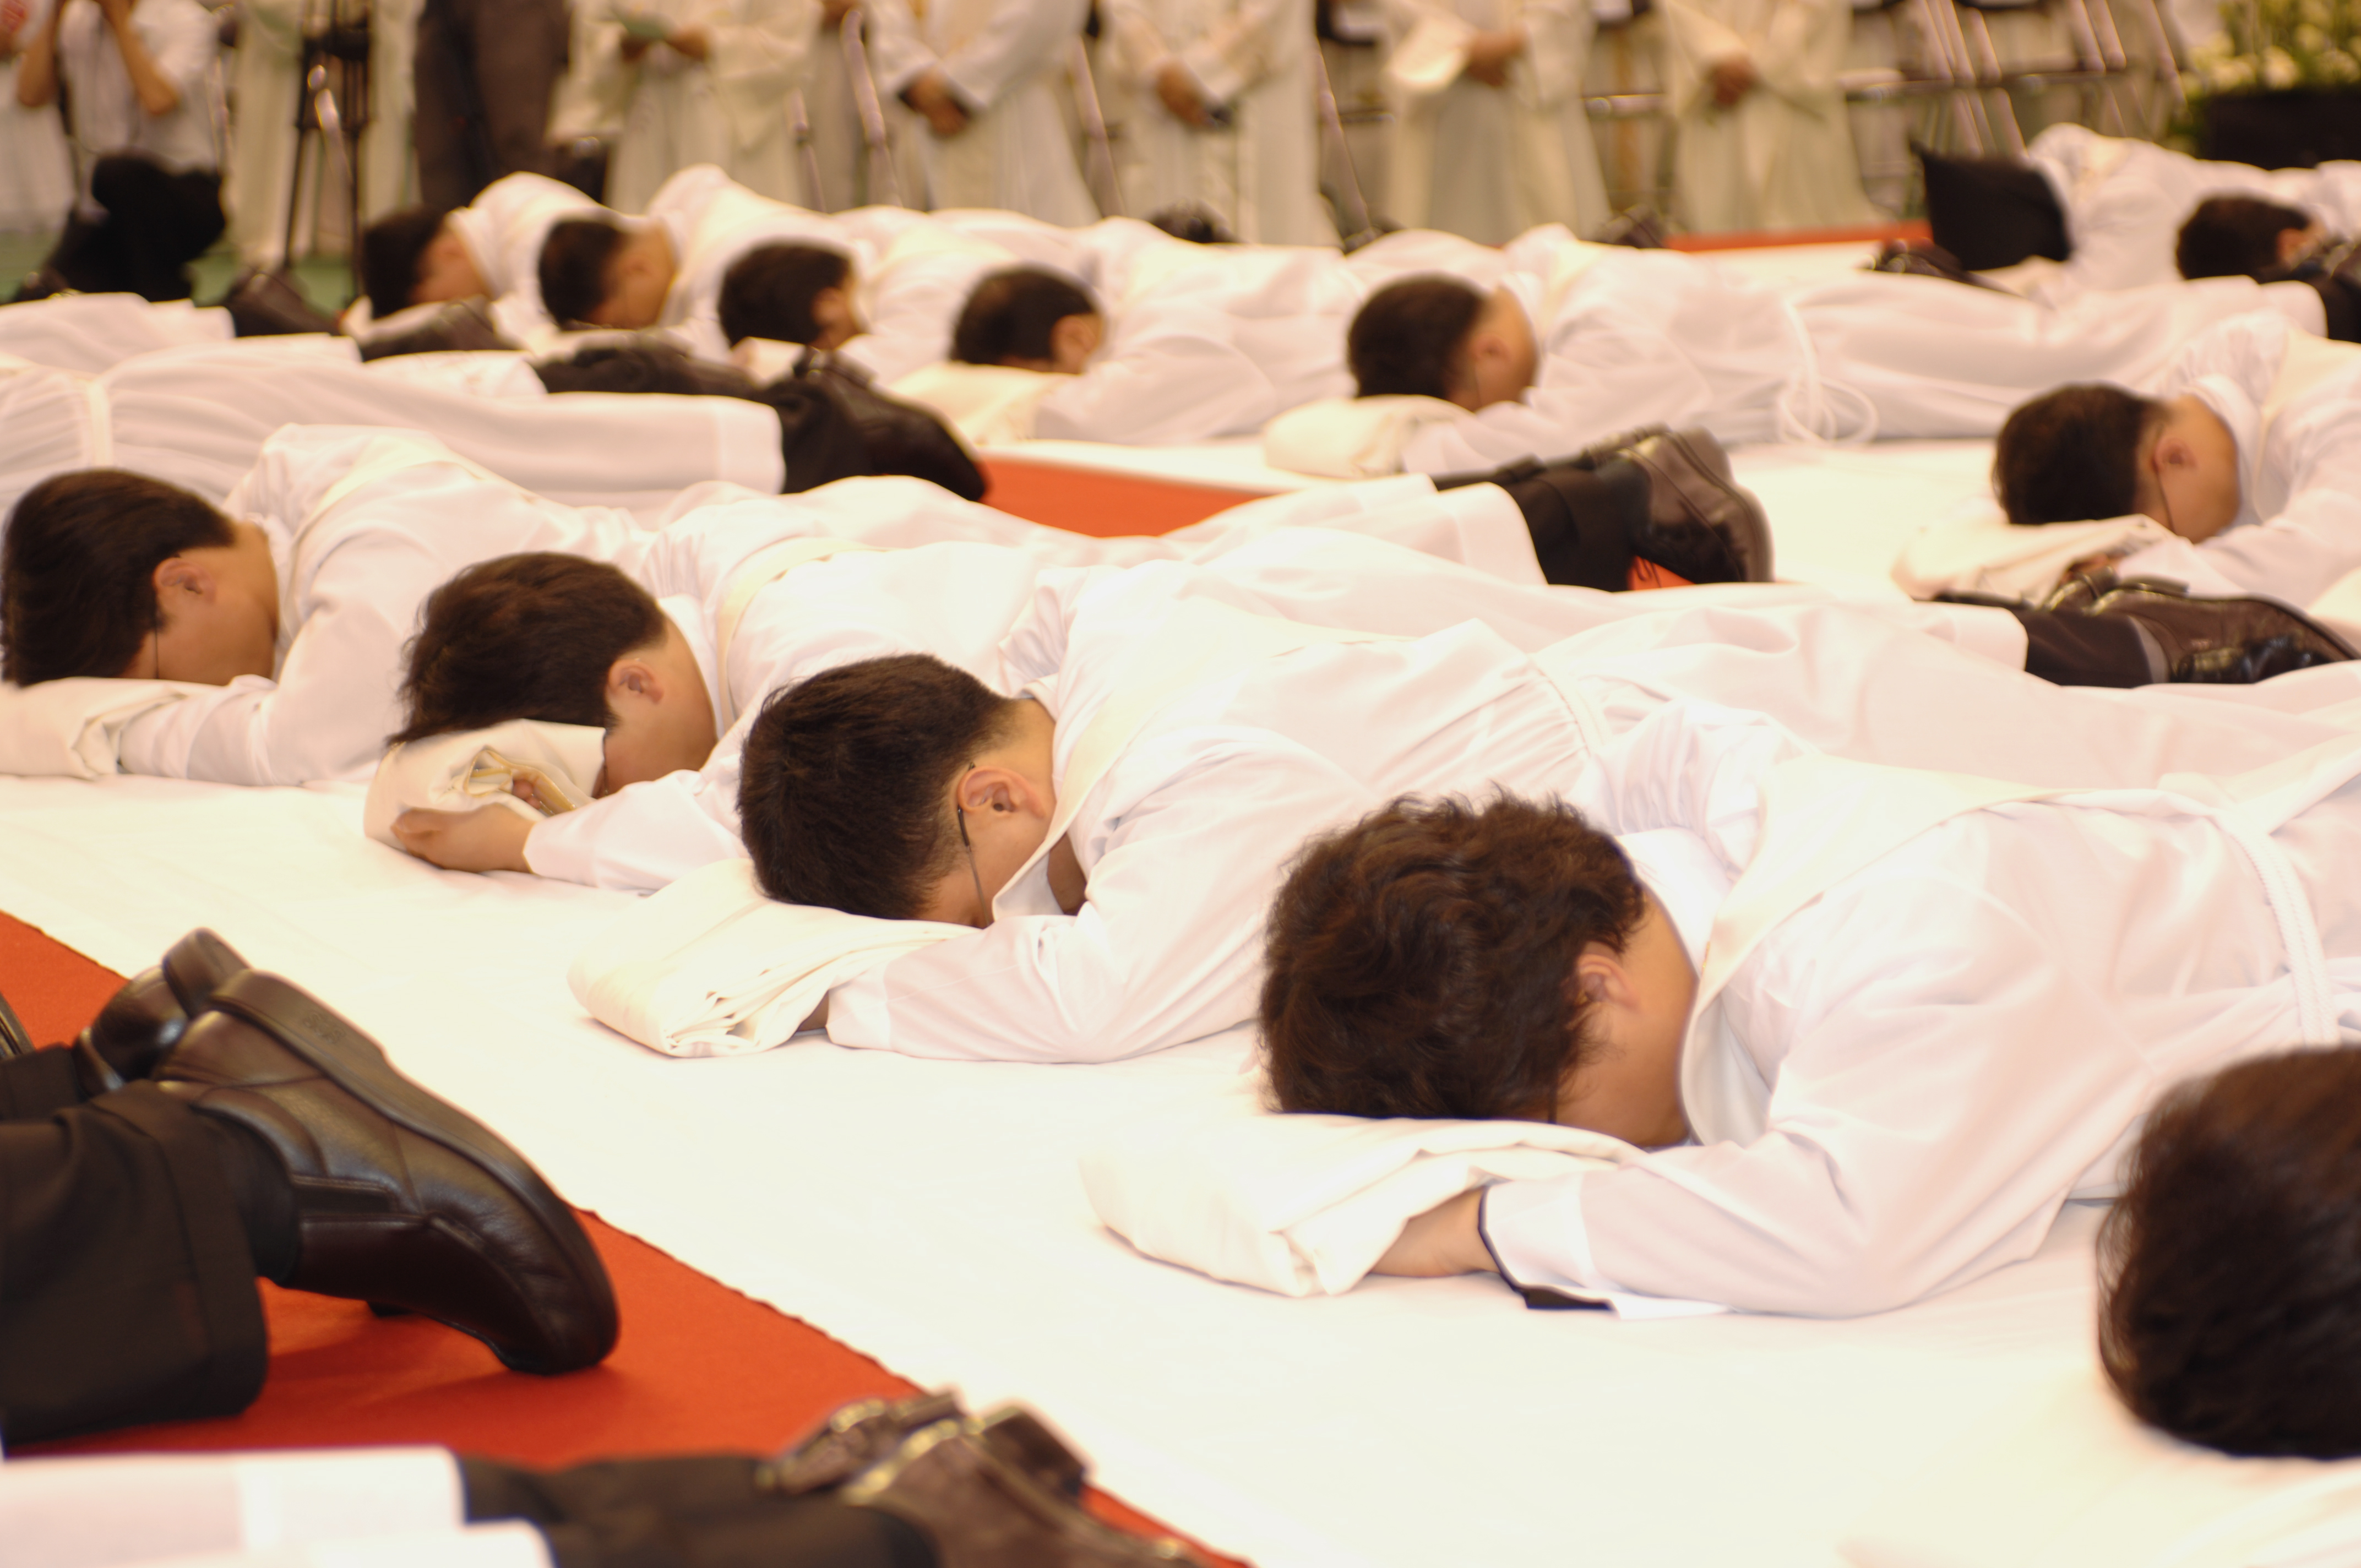 서울대교구서품식(2006)의 관련된 이미지 입니다.